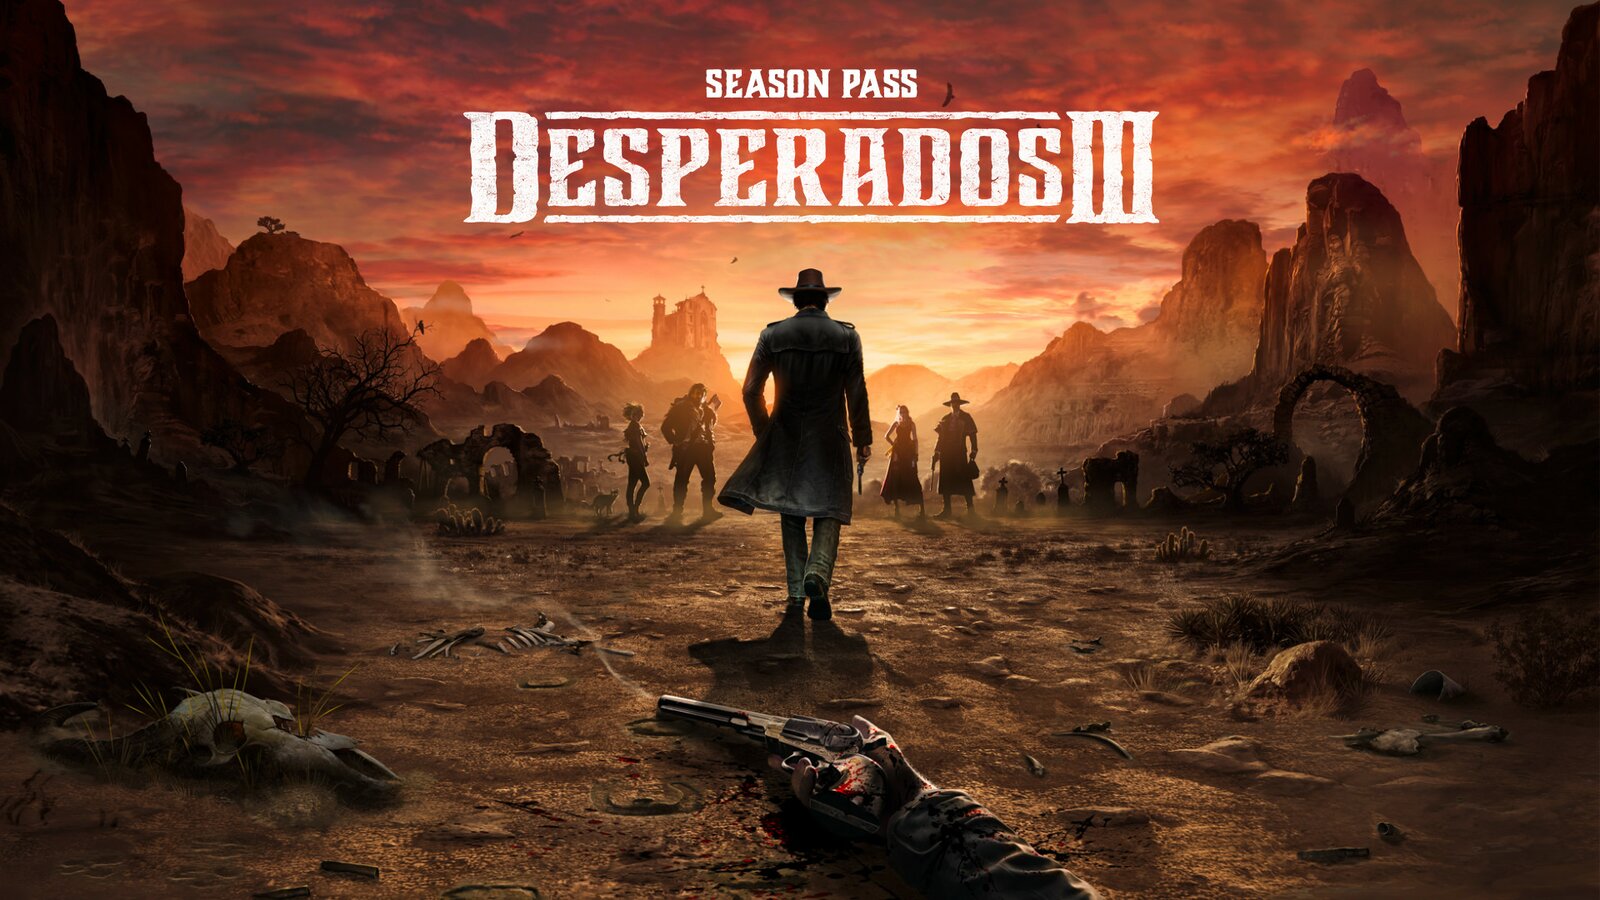 Desperados III - Season Pass